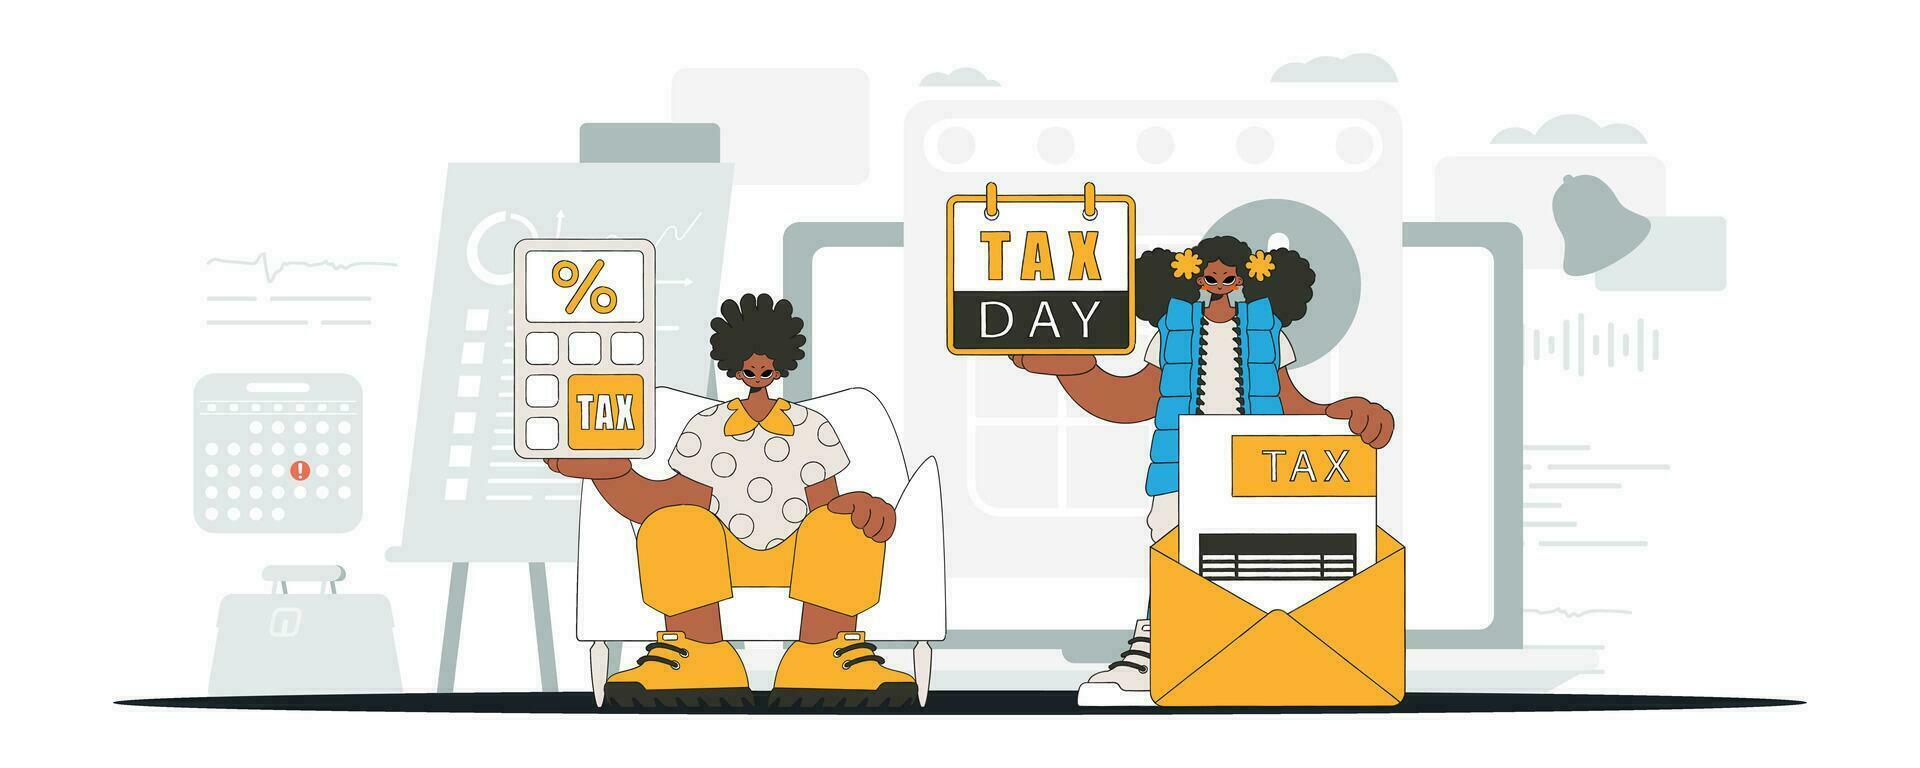 en graciös flicka och en kille är engagerad i betalande skatter. ett illustration demonstrera de betydelse av betalande skatter för ekonomisk utveckling. vektor